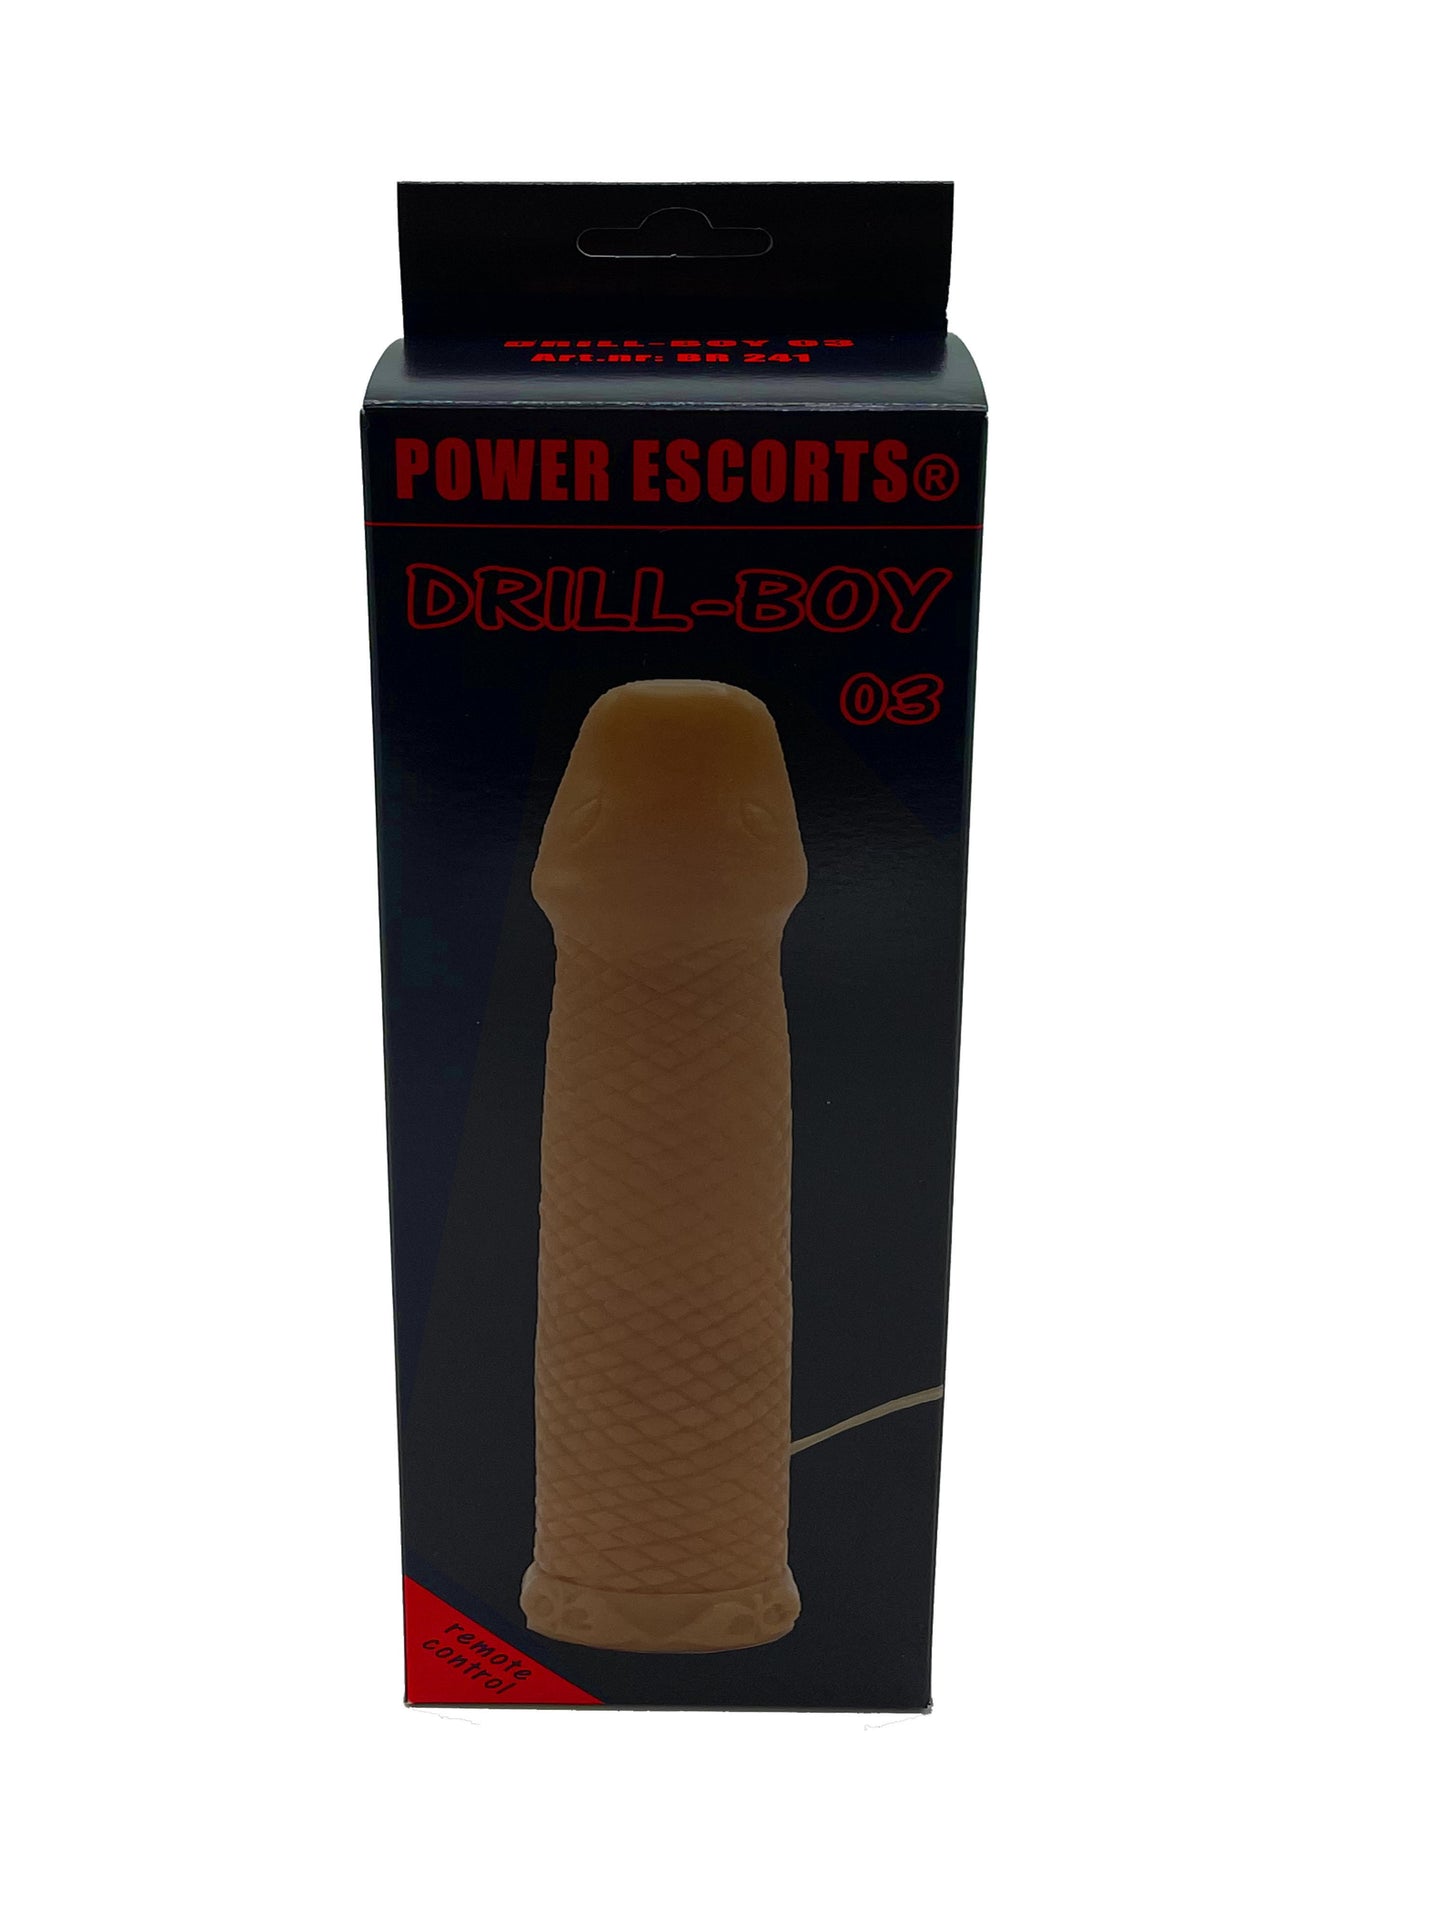 Power Escort - BR241 - Drill-Boy 03 - Realistic Vibrator - Wired Remote Control - 20cm